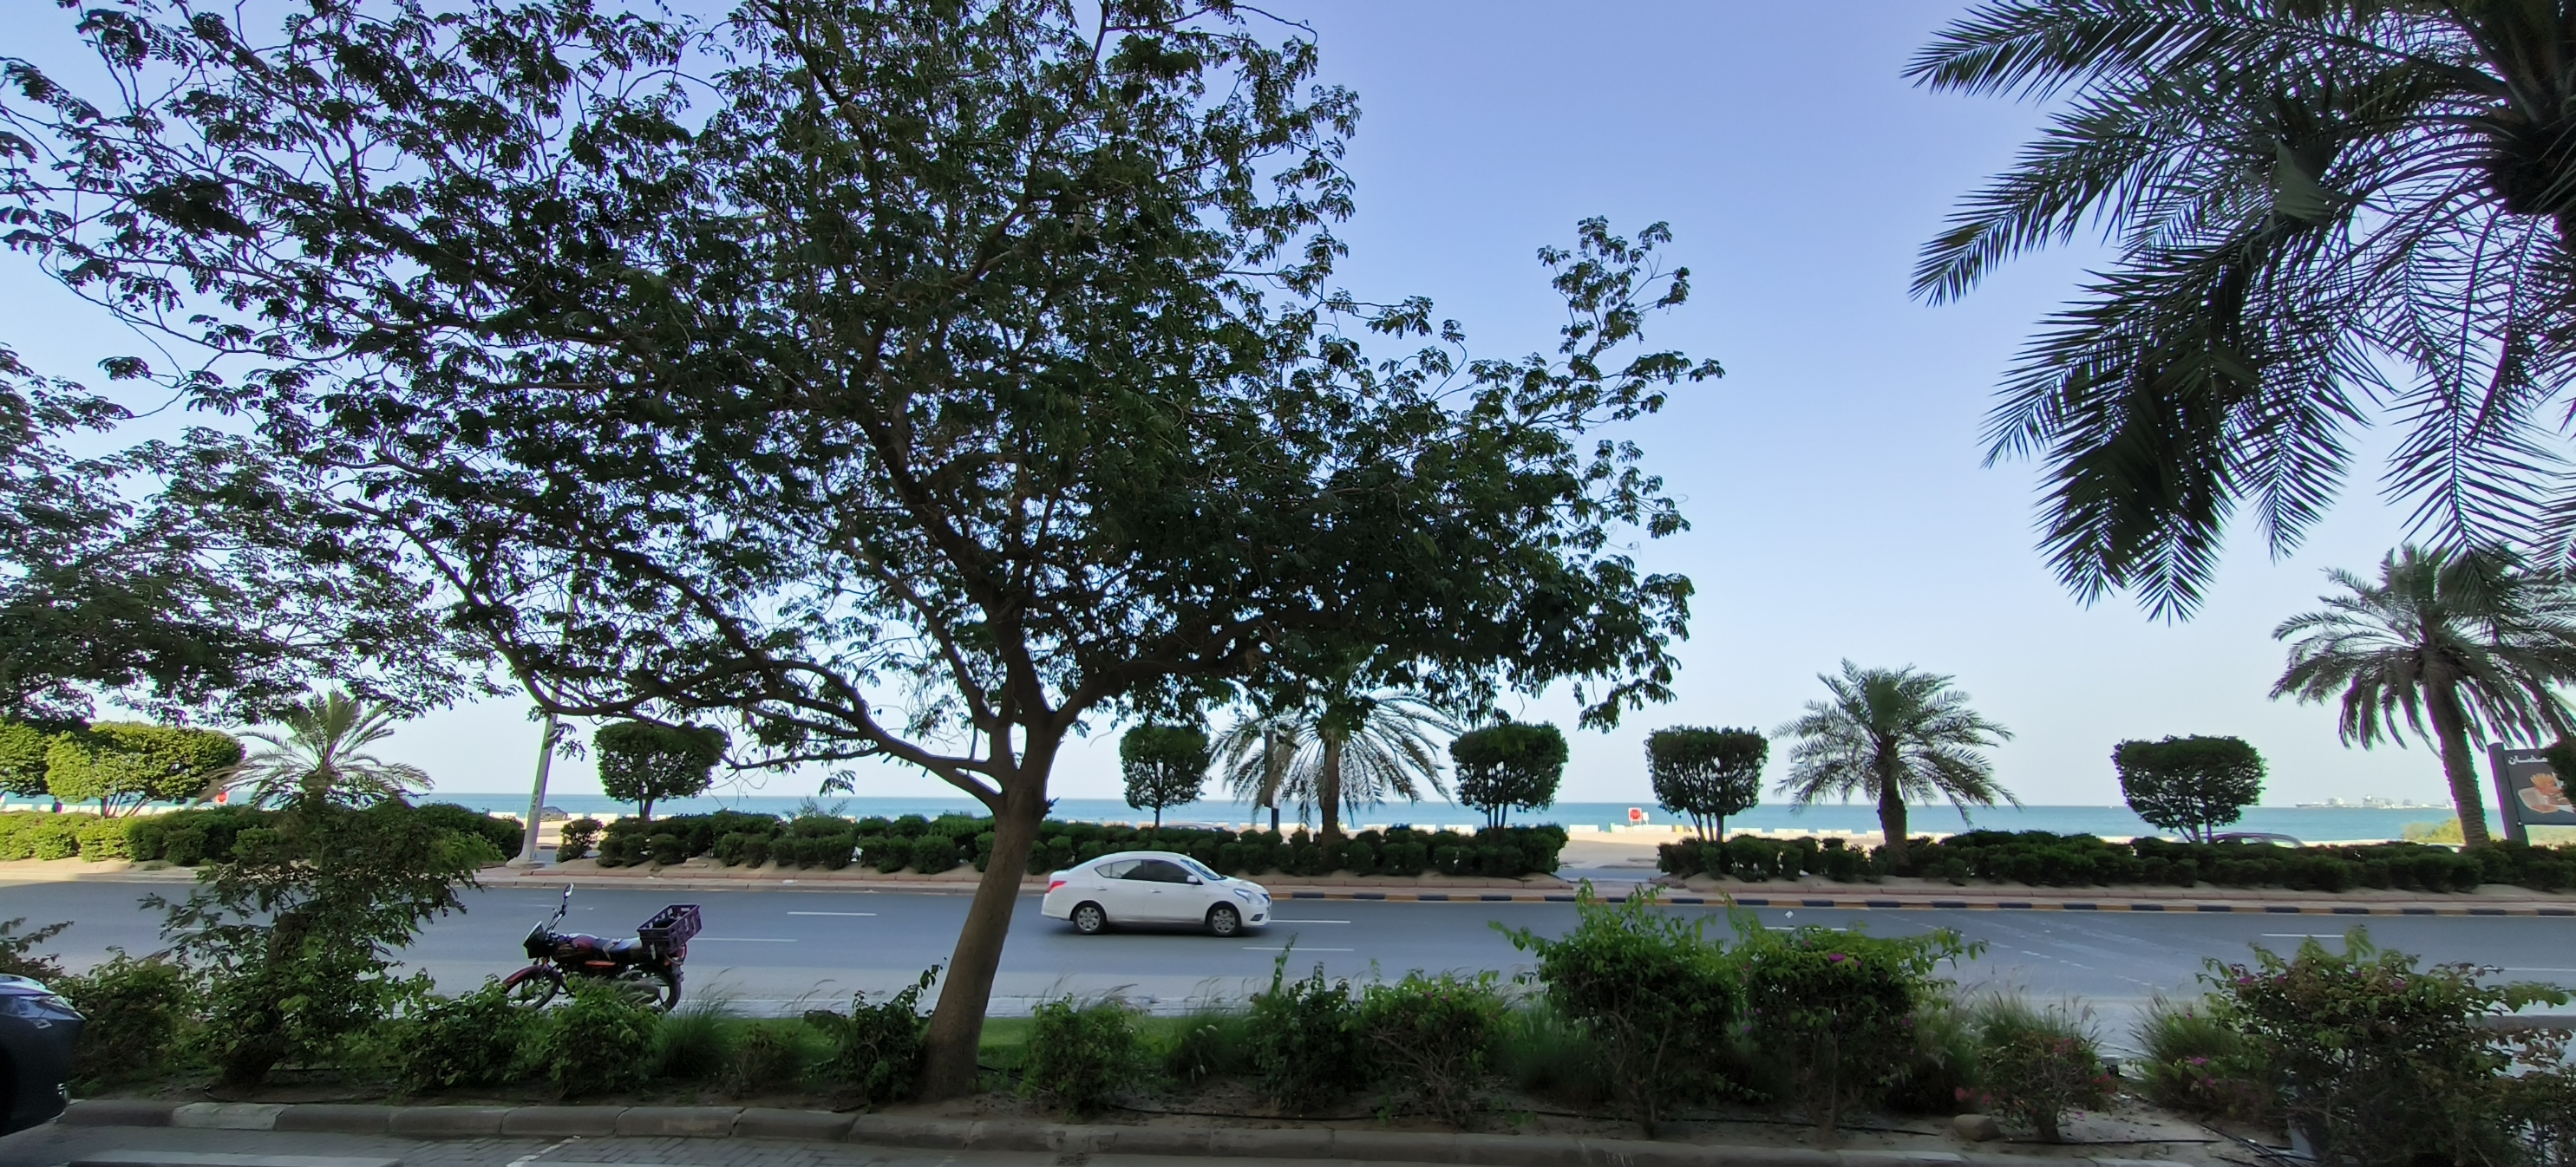 科威特曼卡夫海滩，终年阳光灿烂，棕榈树，沙滩，这些元素吸引了希尔顿酒店在此安营扎寨。游客络绎不绝。